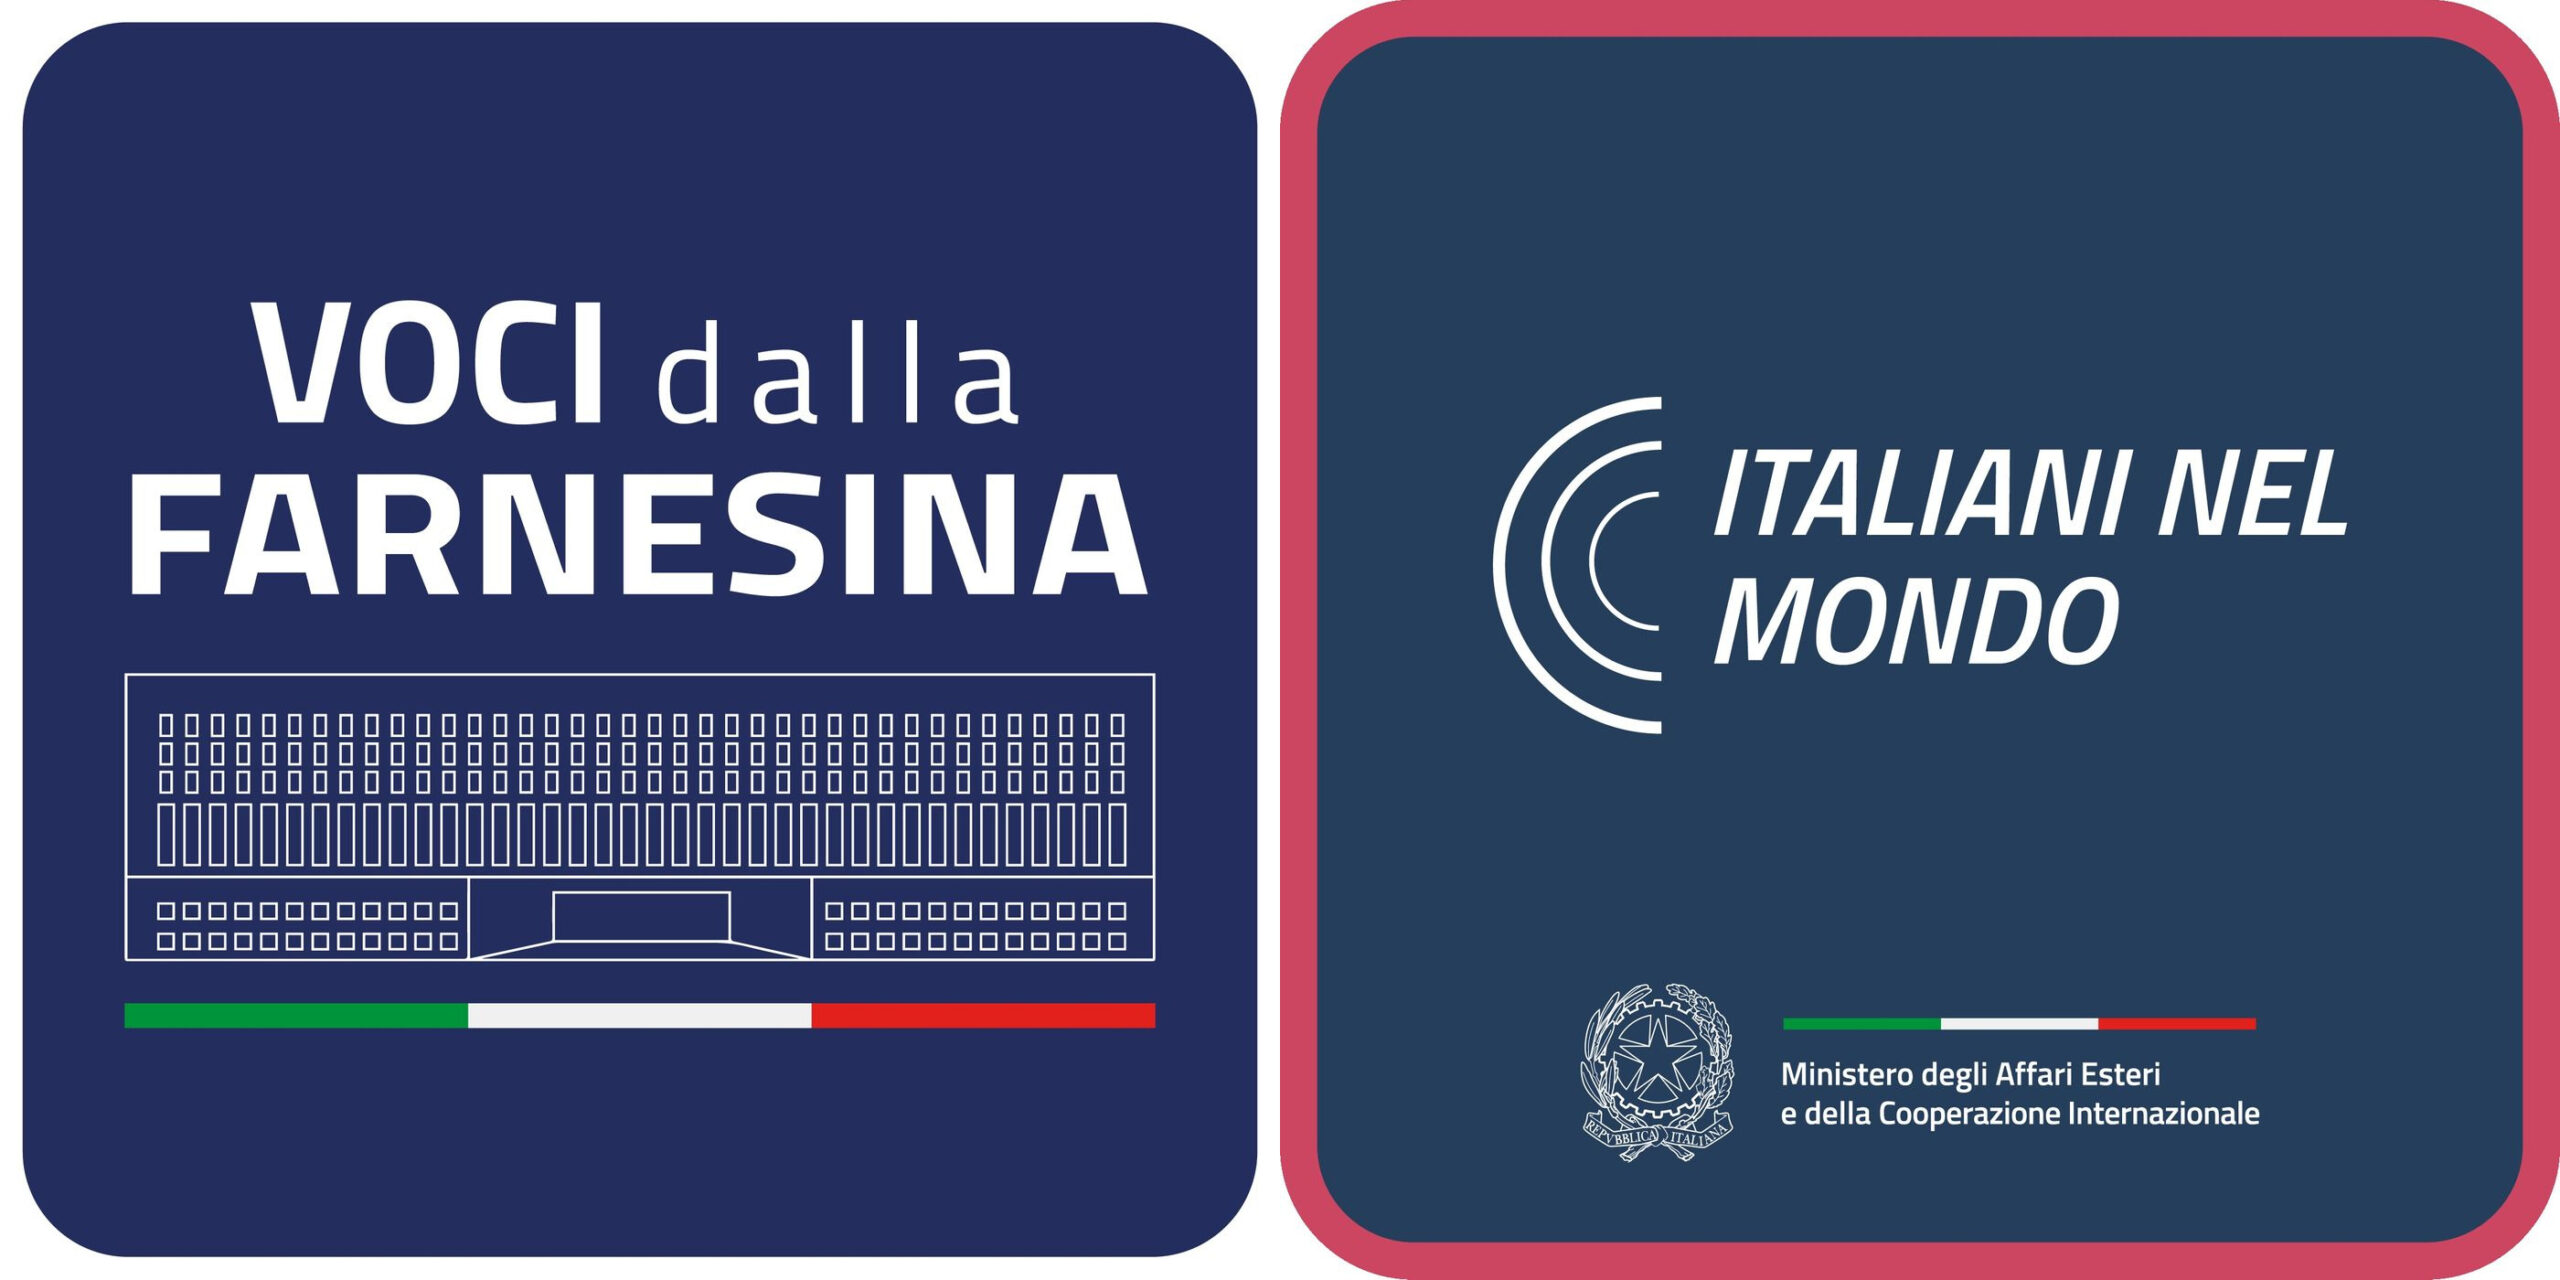 "Voci della Farnesina" болон "Italiani nel mondo" логоны хоорондох хагарал